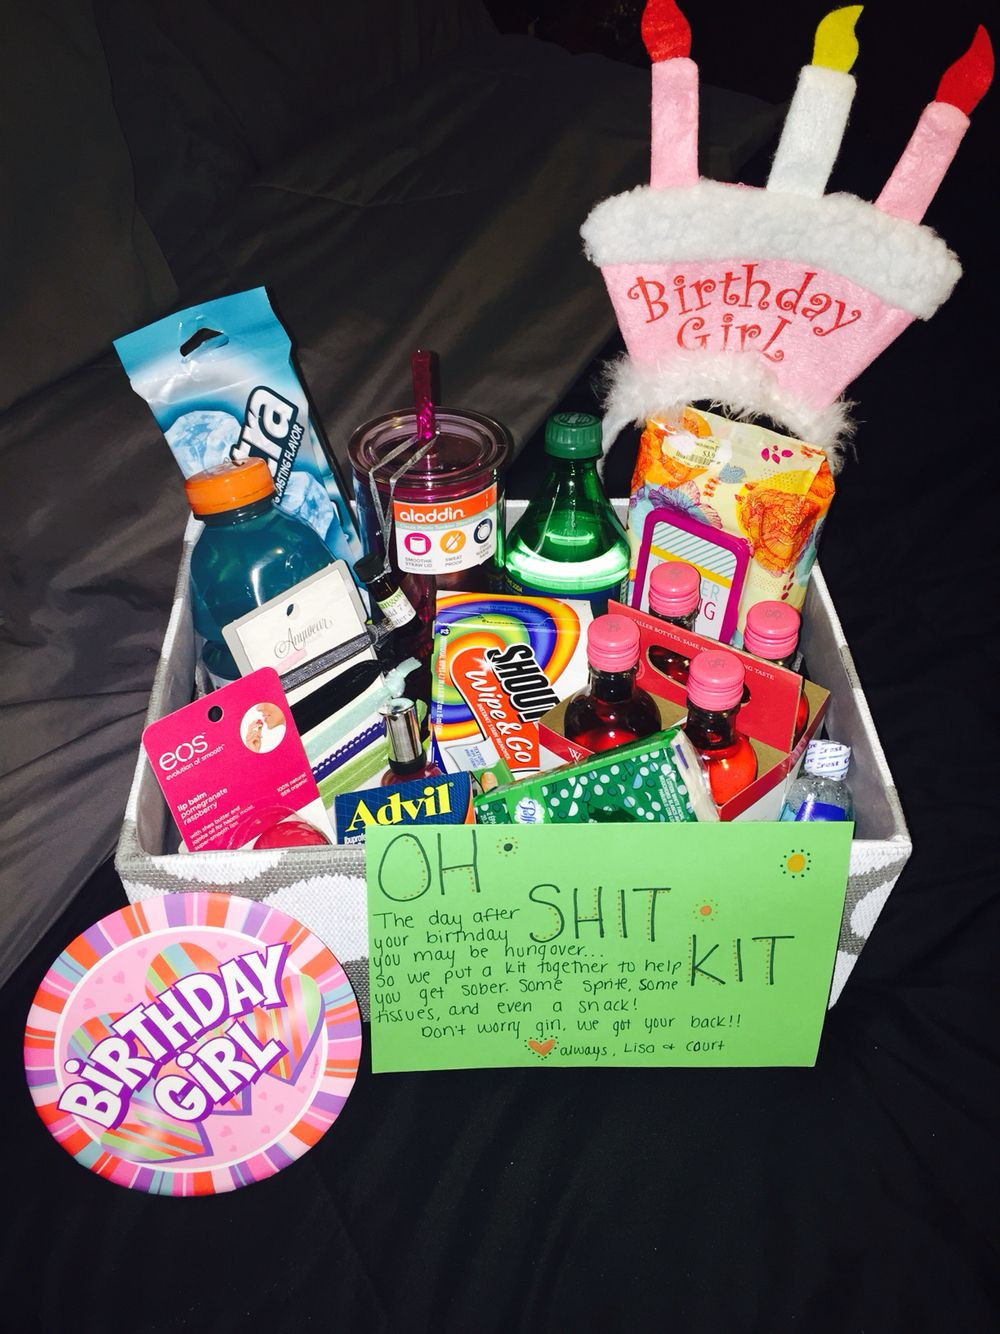 Birthday Gift Ideas For Girl Best Friend
 Bestfriend s 21st birthday "Oh Shit Kit"